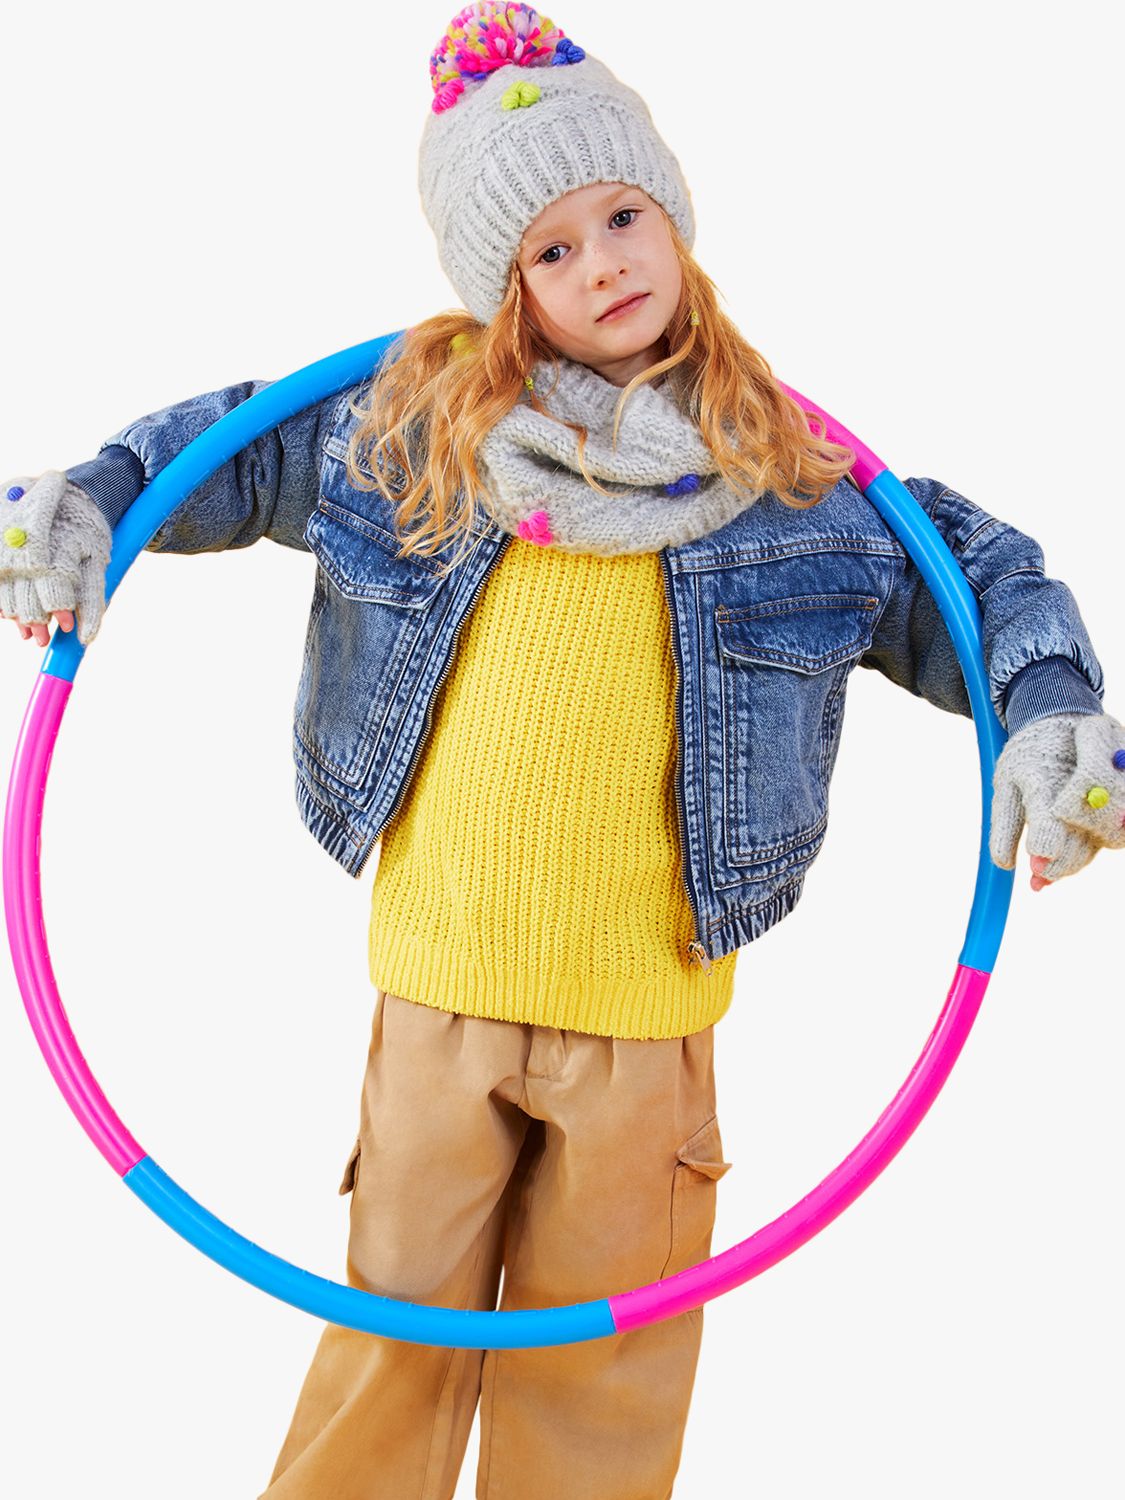 Buy Angels by Accessorize Kids' Pom Pom Hat & Gloves Set, Grey/Multi Online at johnlewis.com